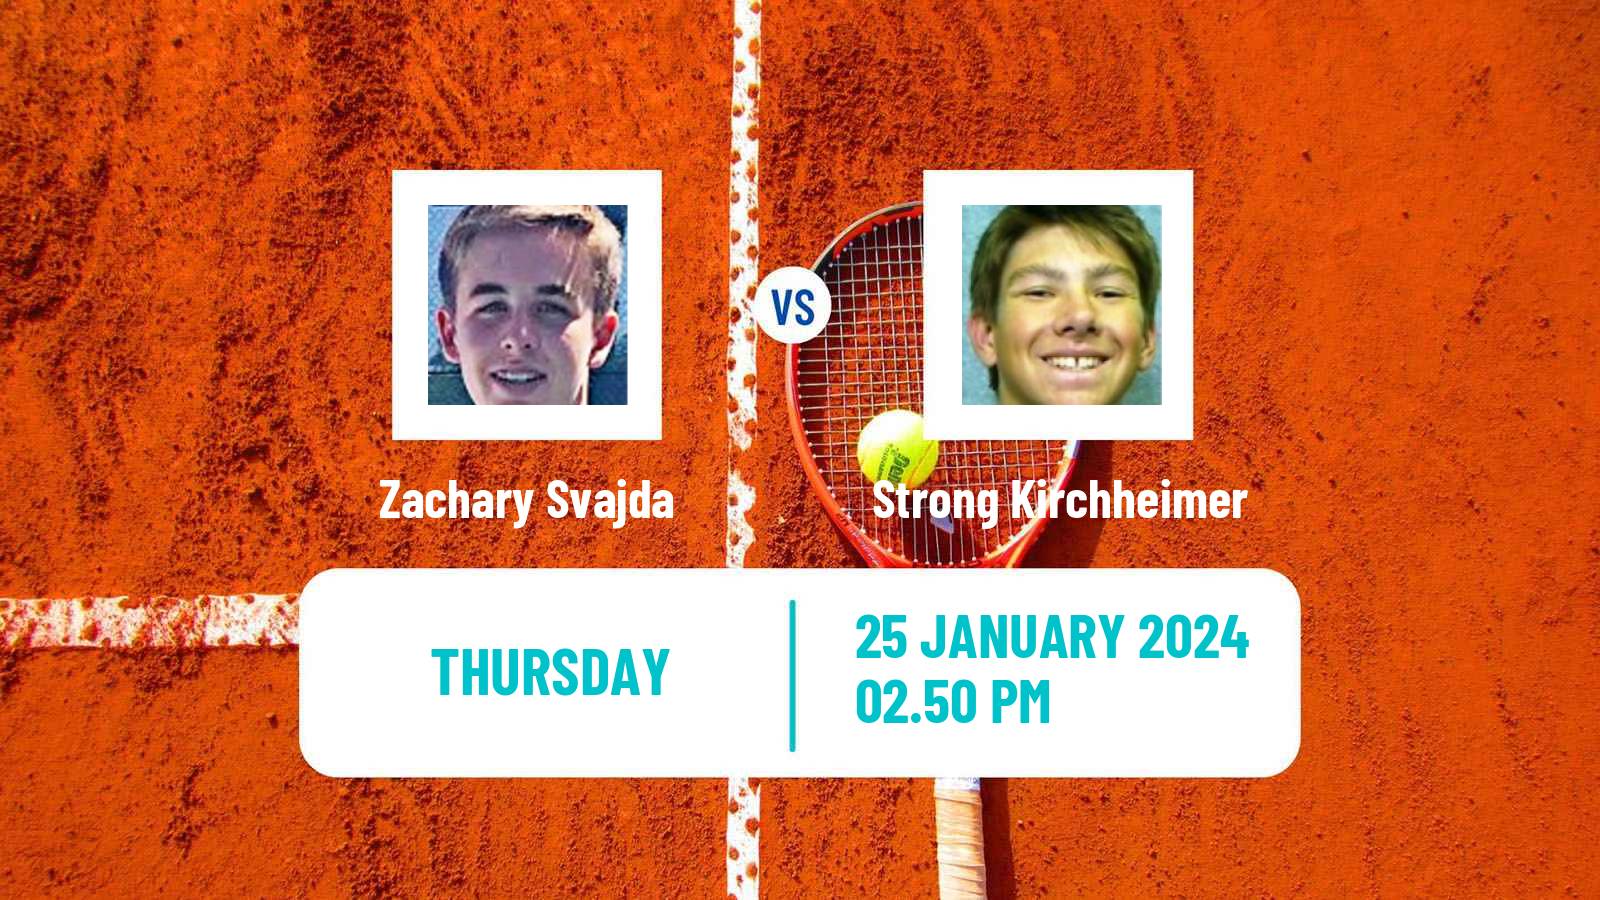 Tennis Indian Wells 2 Challenger Men Zachary Svajda - Strong Kirchheimer